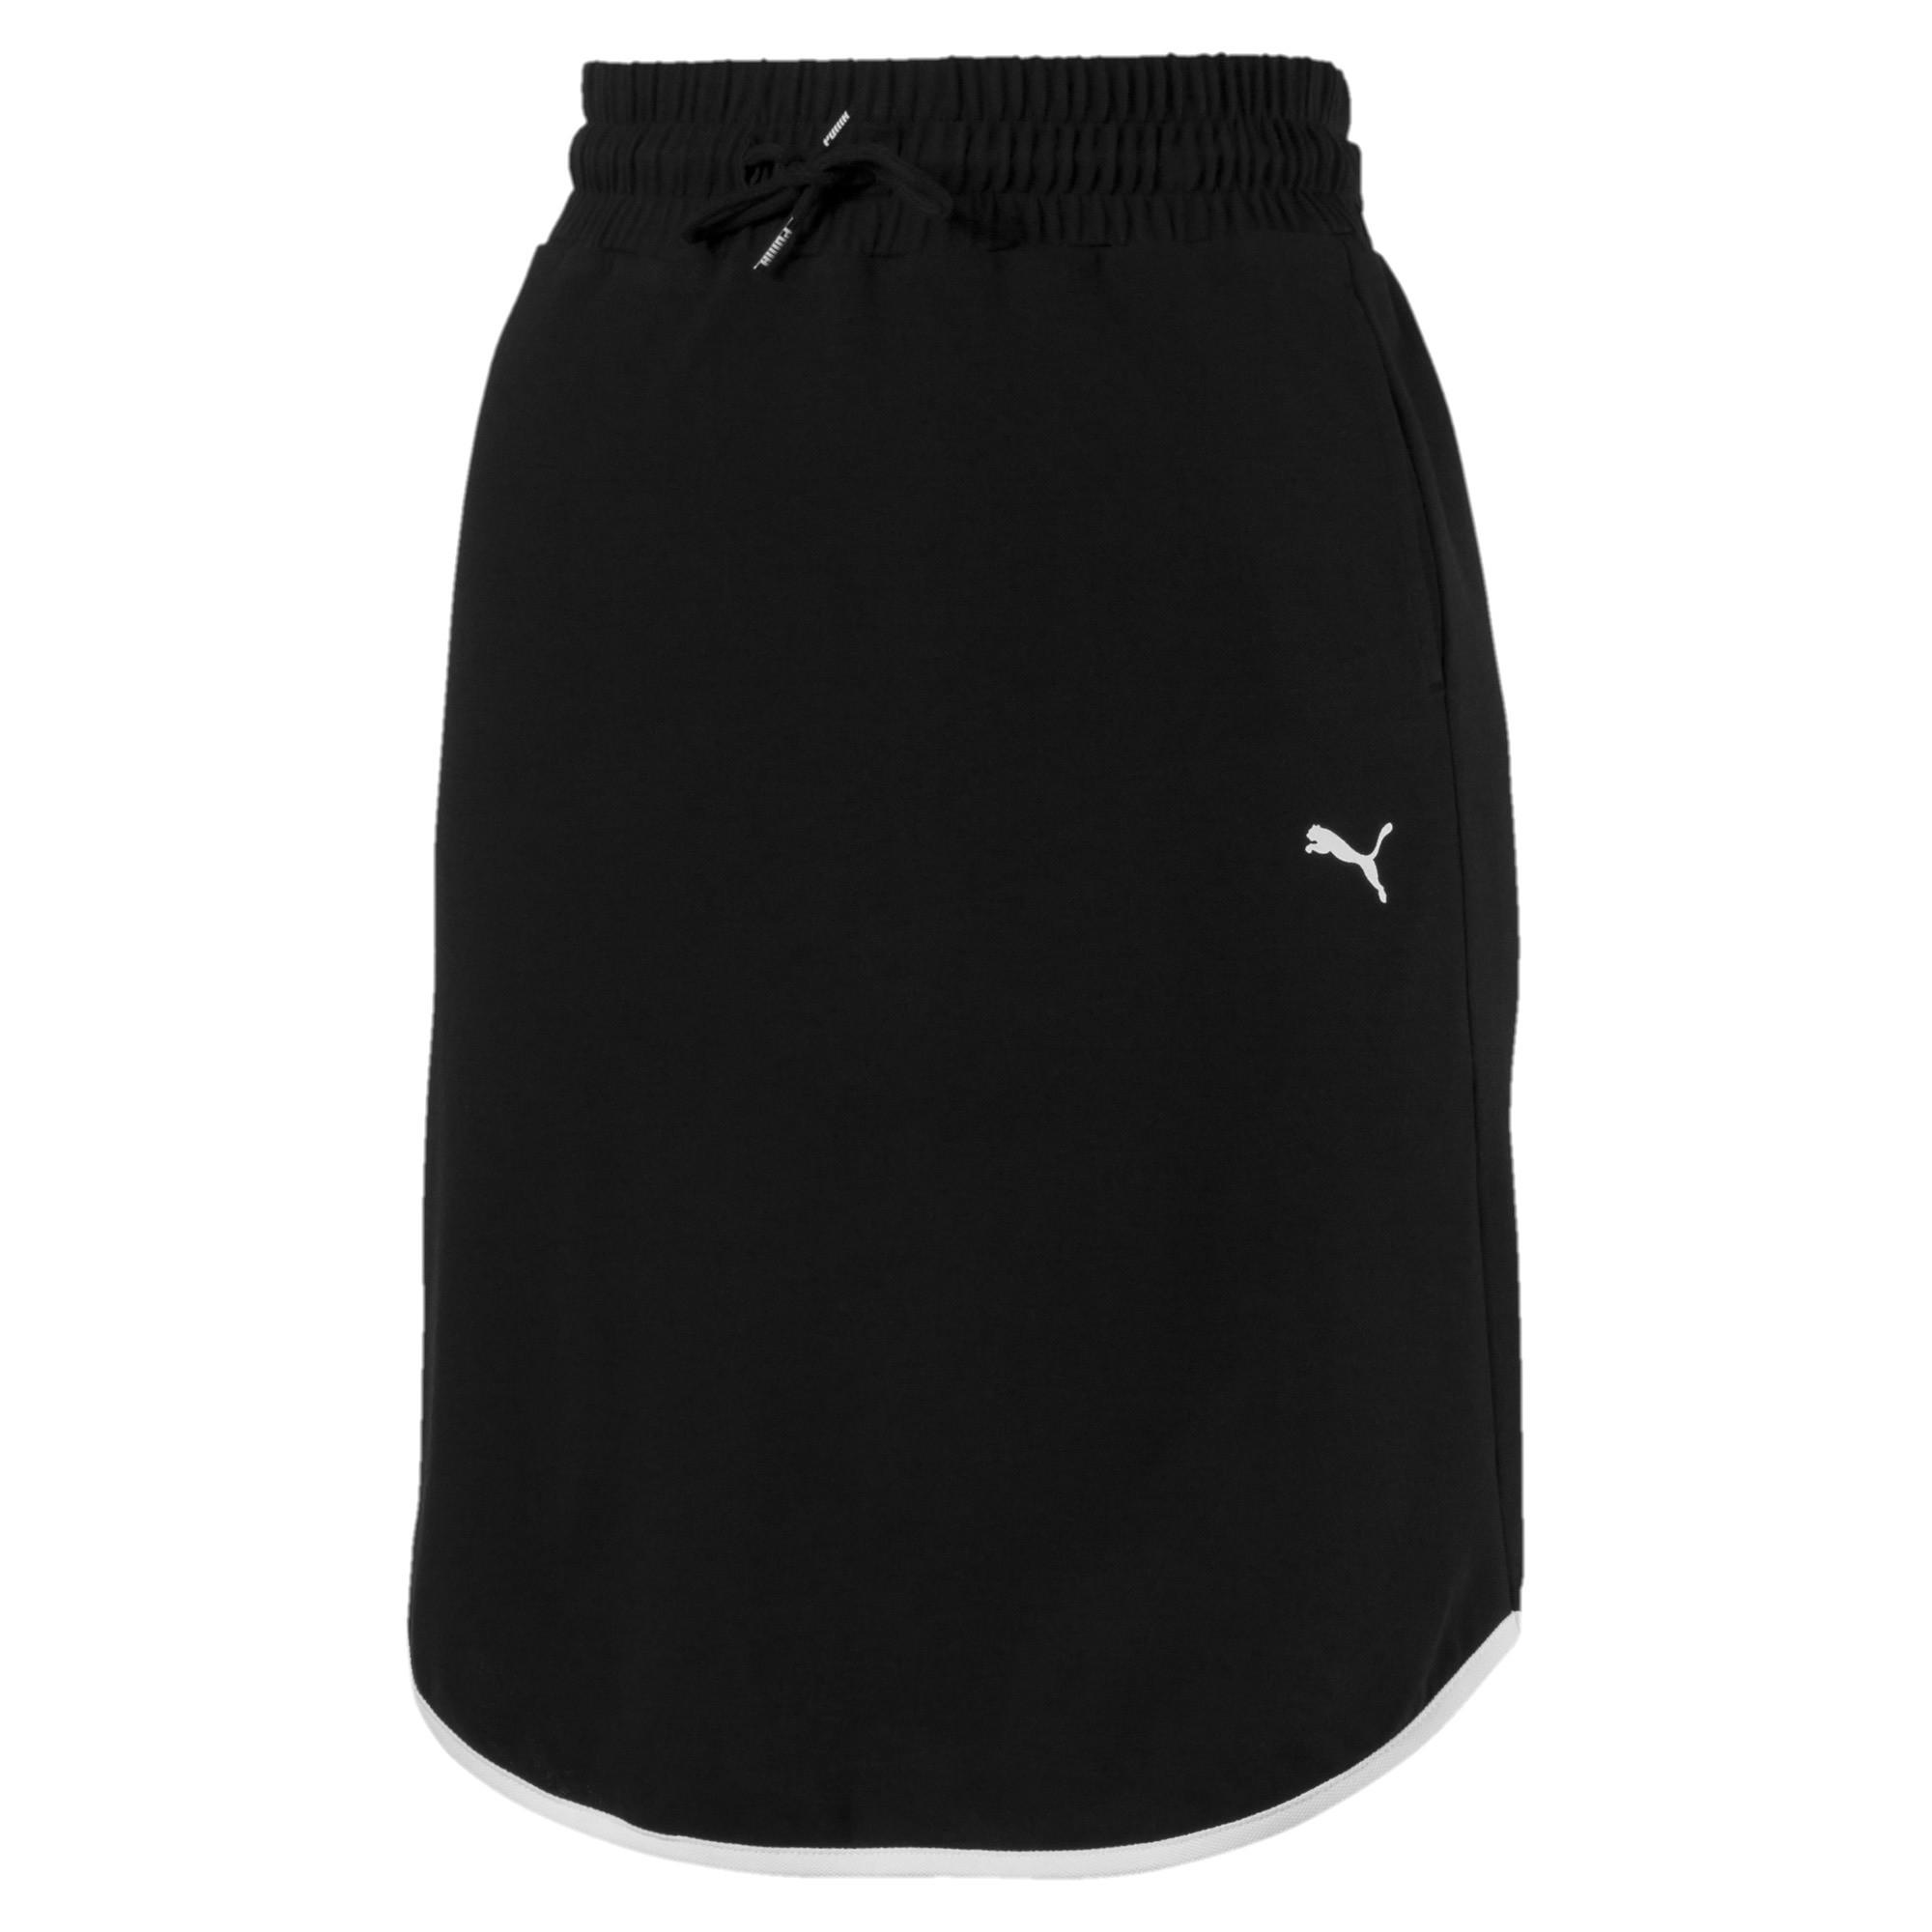 puma summer skirt